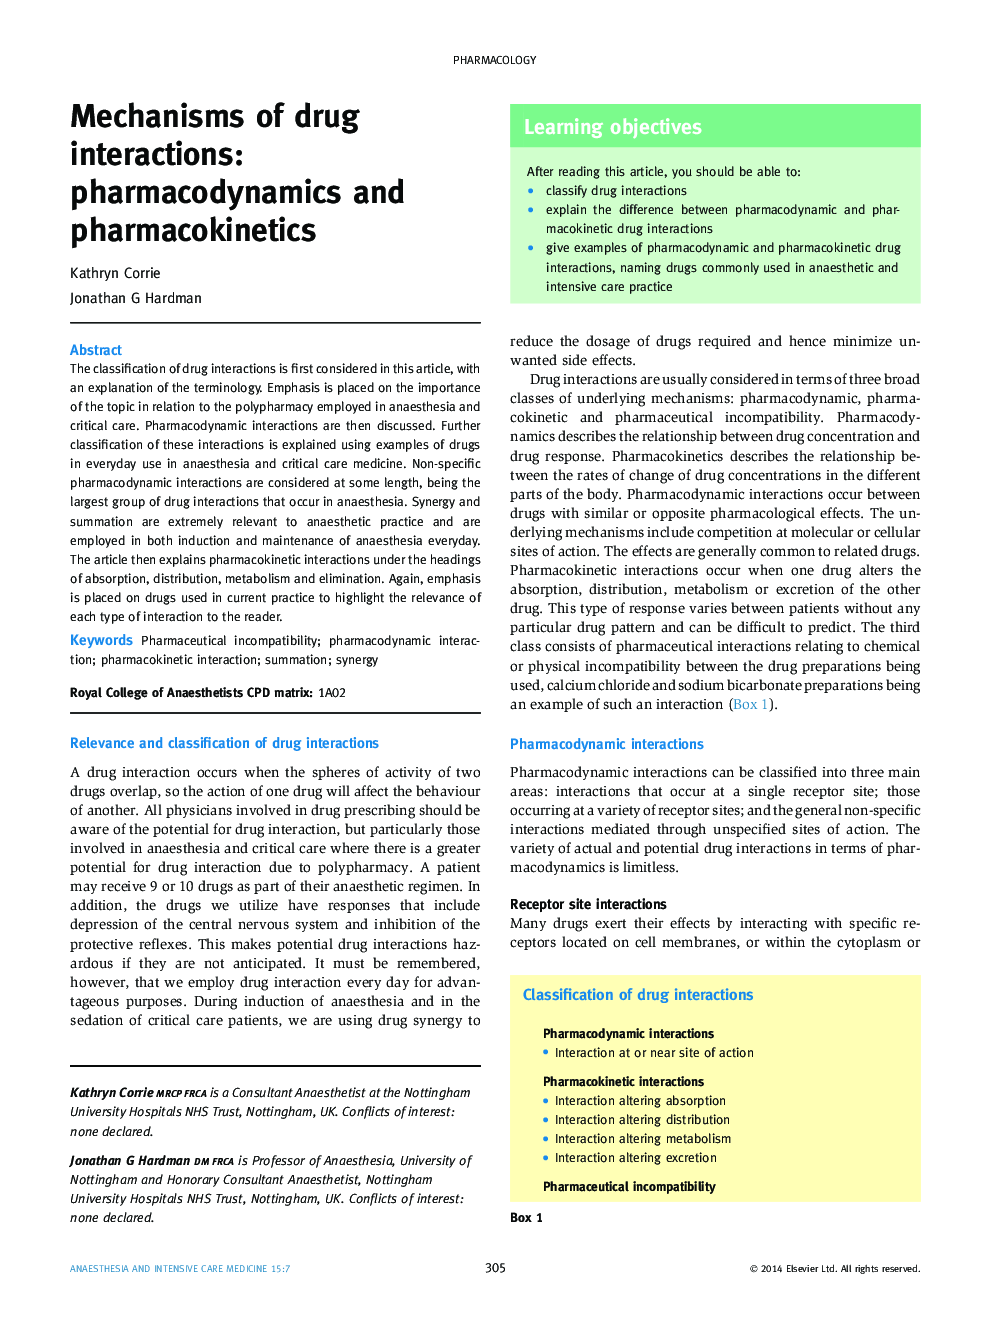 مکانیسم های تعاملات دارویی: فارماکودینامیک و فارماکوکینتیک 